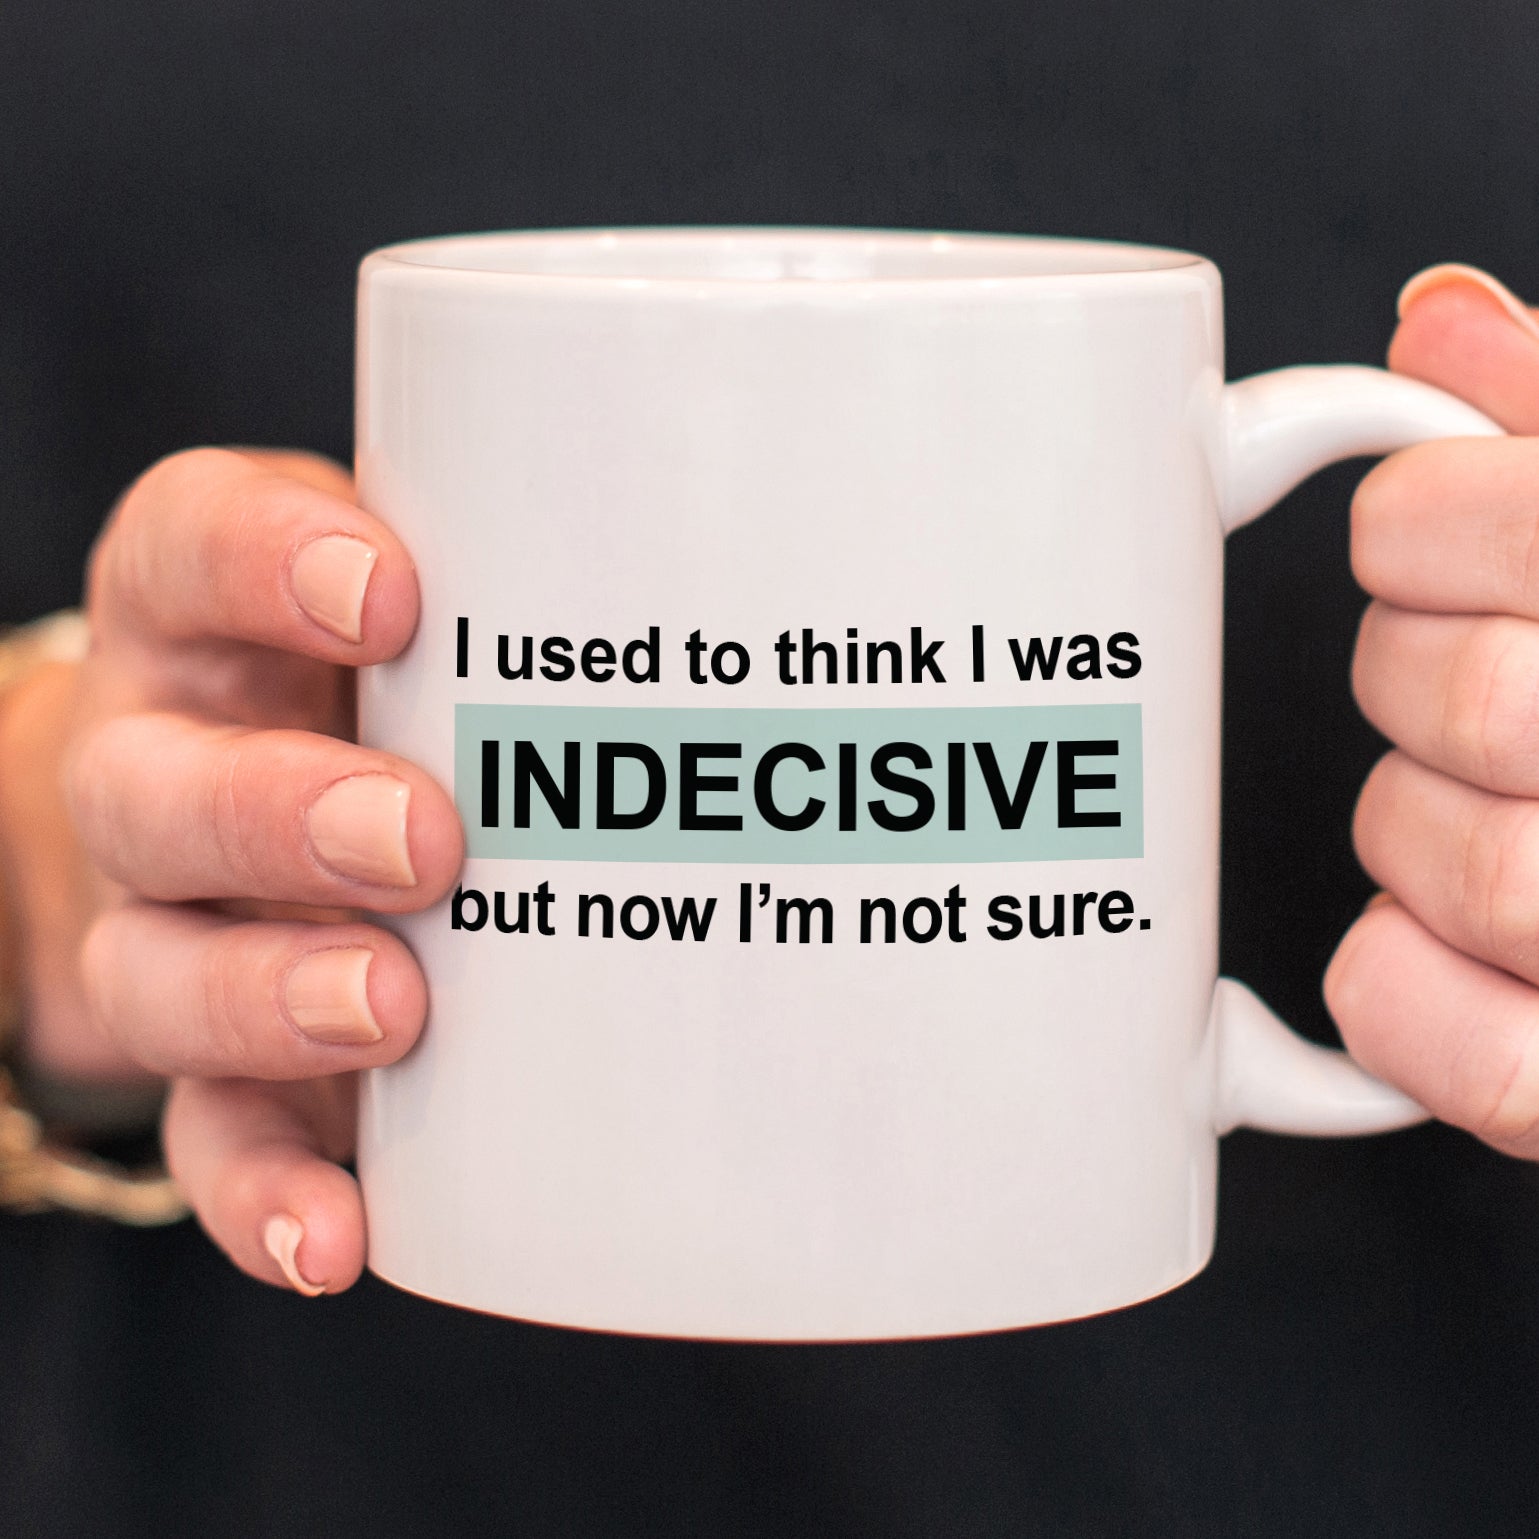 Indecisive Coffee Mug, Over-thinker, PIPSY.COM, funny mug